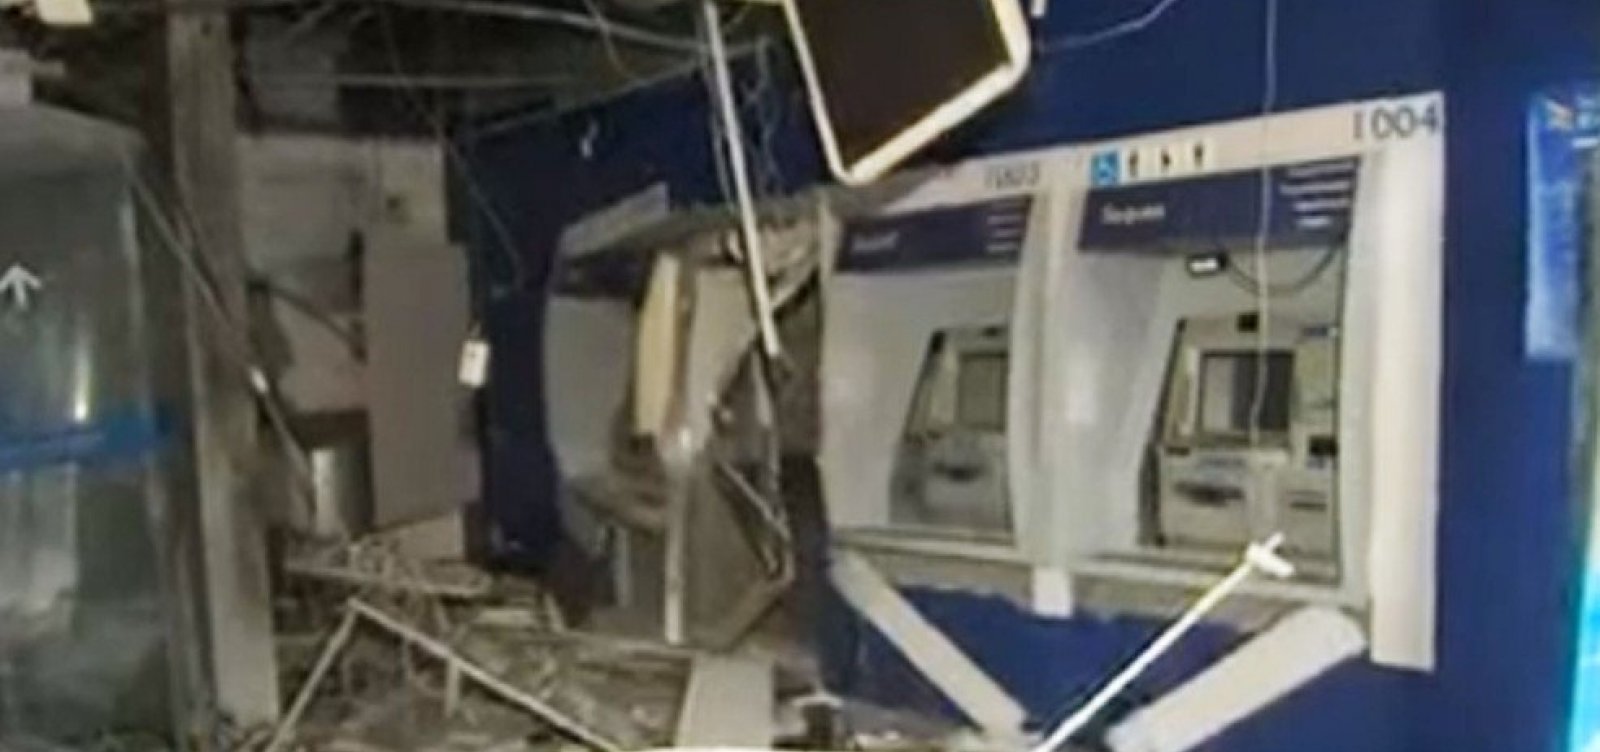 Caixas de agência bancária são explodidos no Retiro, em Salvador